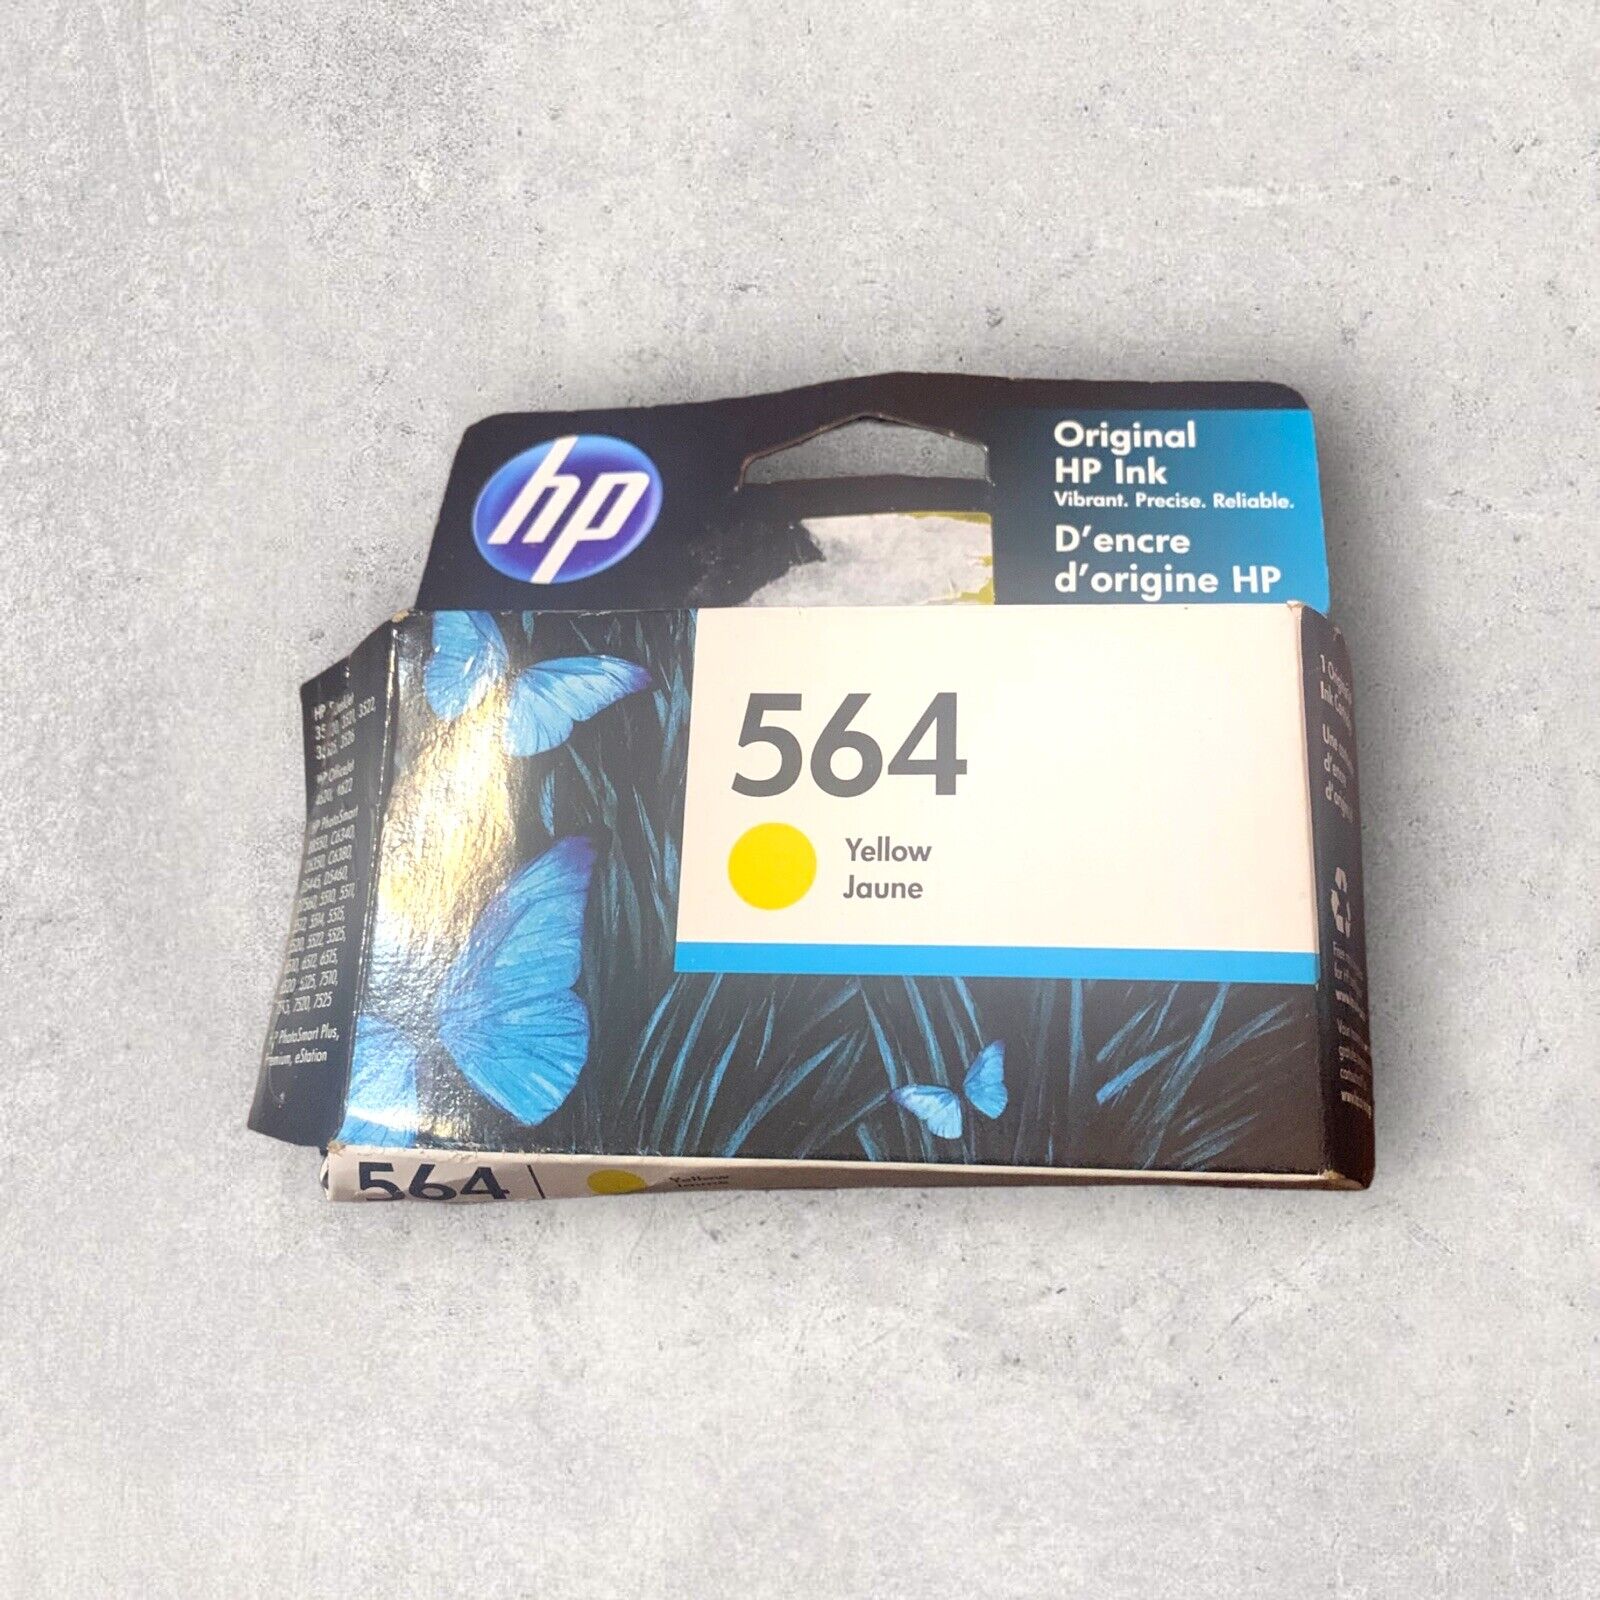 Genuine HP 564 Single Original Yellow Ink Cartridge Expired 2023 NEW